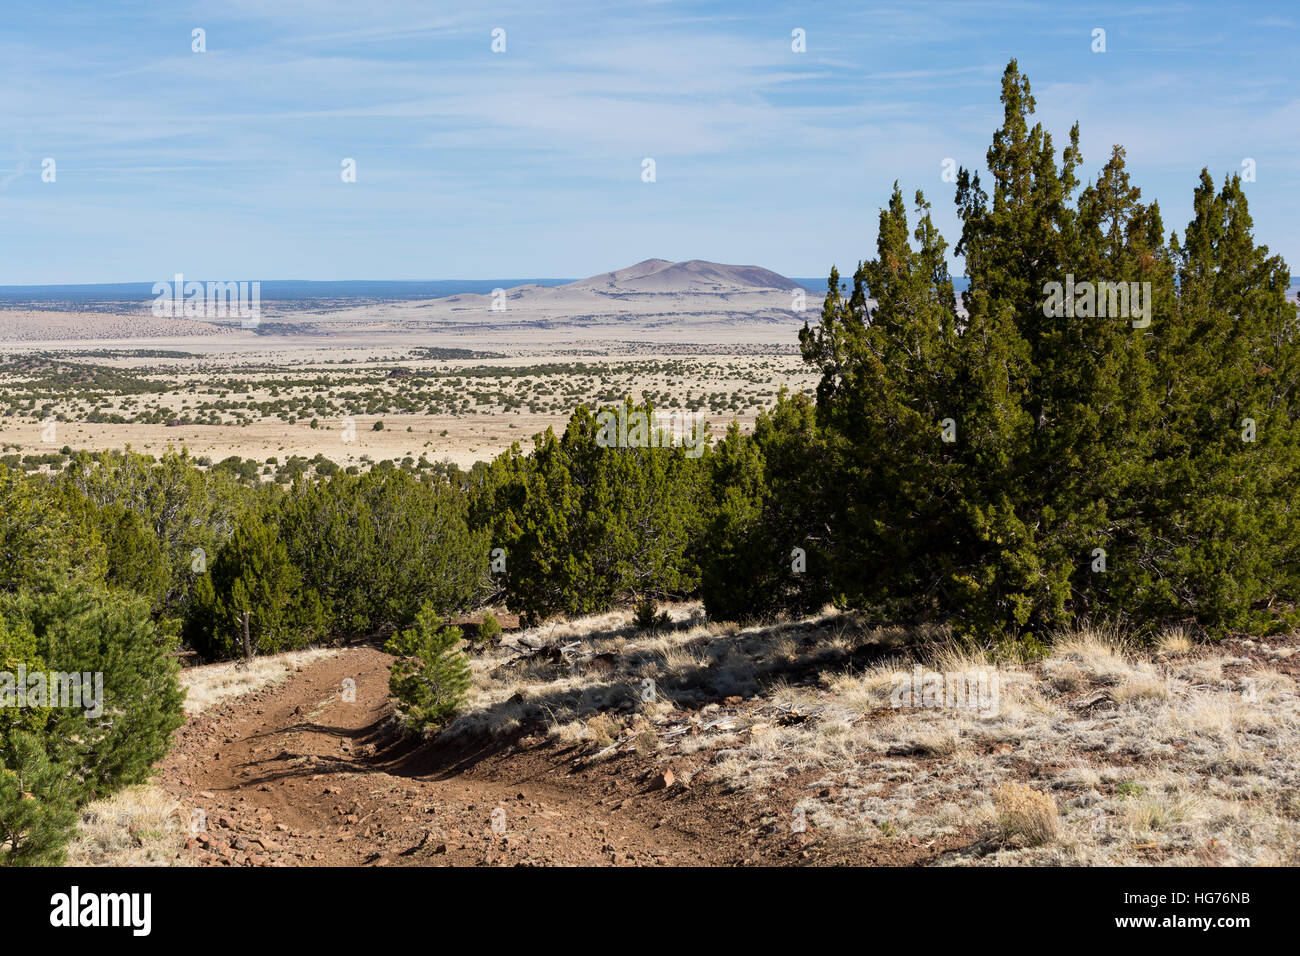 Une route de terre laissant tomber vers le bas dans une prairie du désert dans le nord de l'Arizona. Coconino National Forest, Arizona Banque D'Images